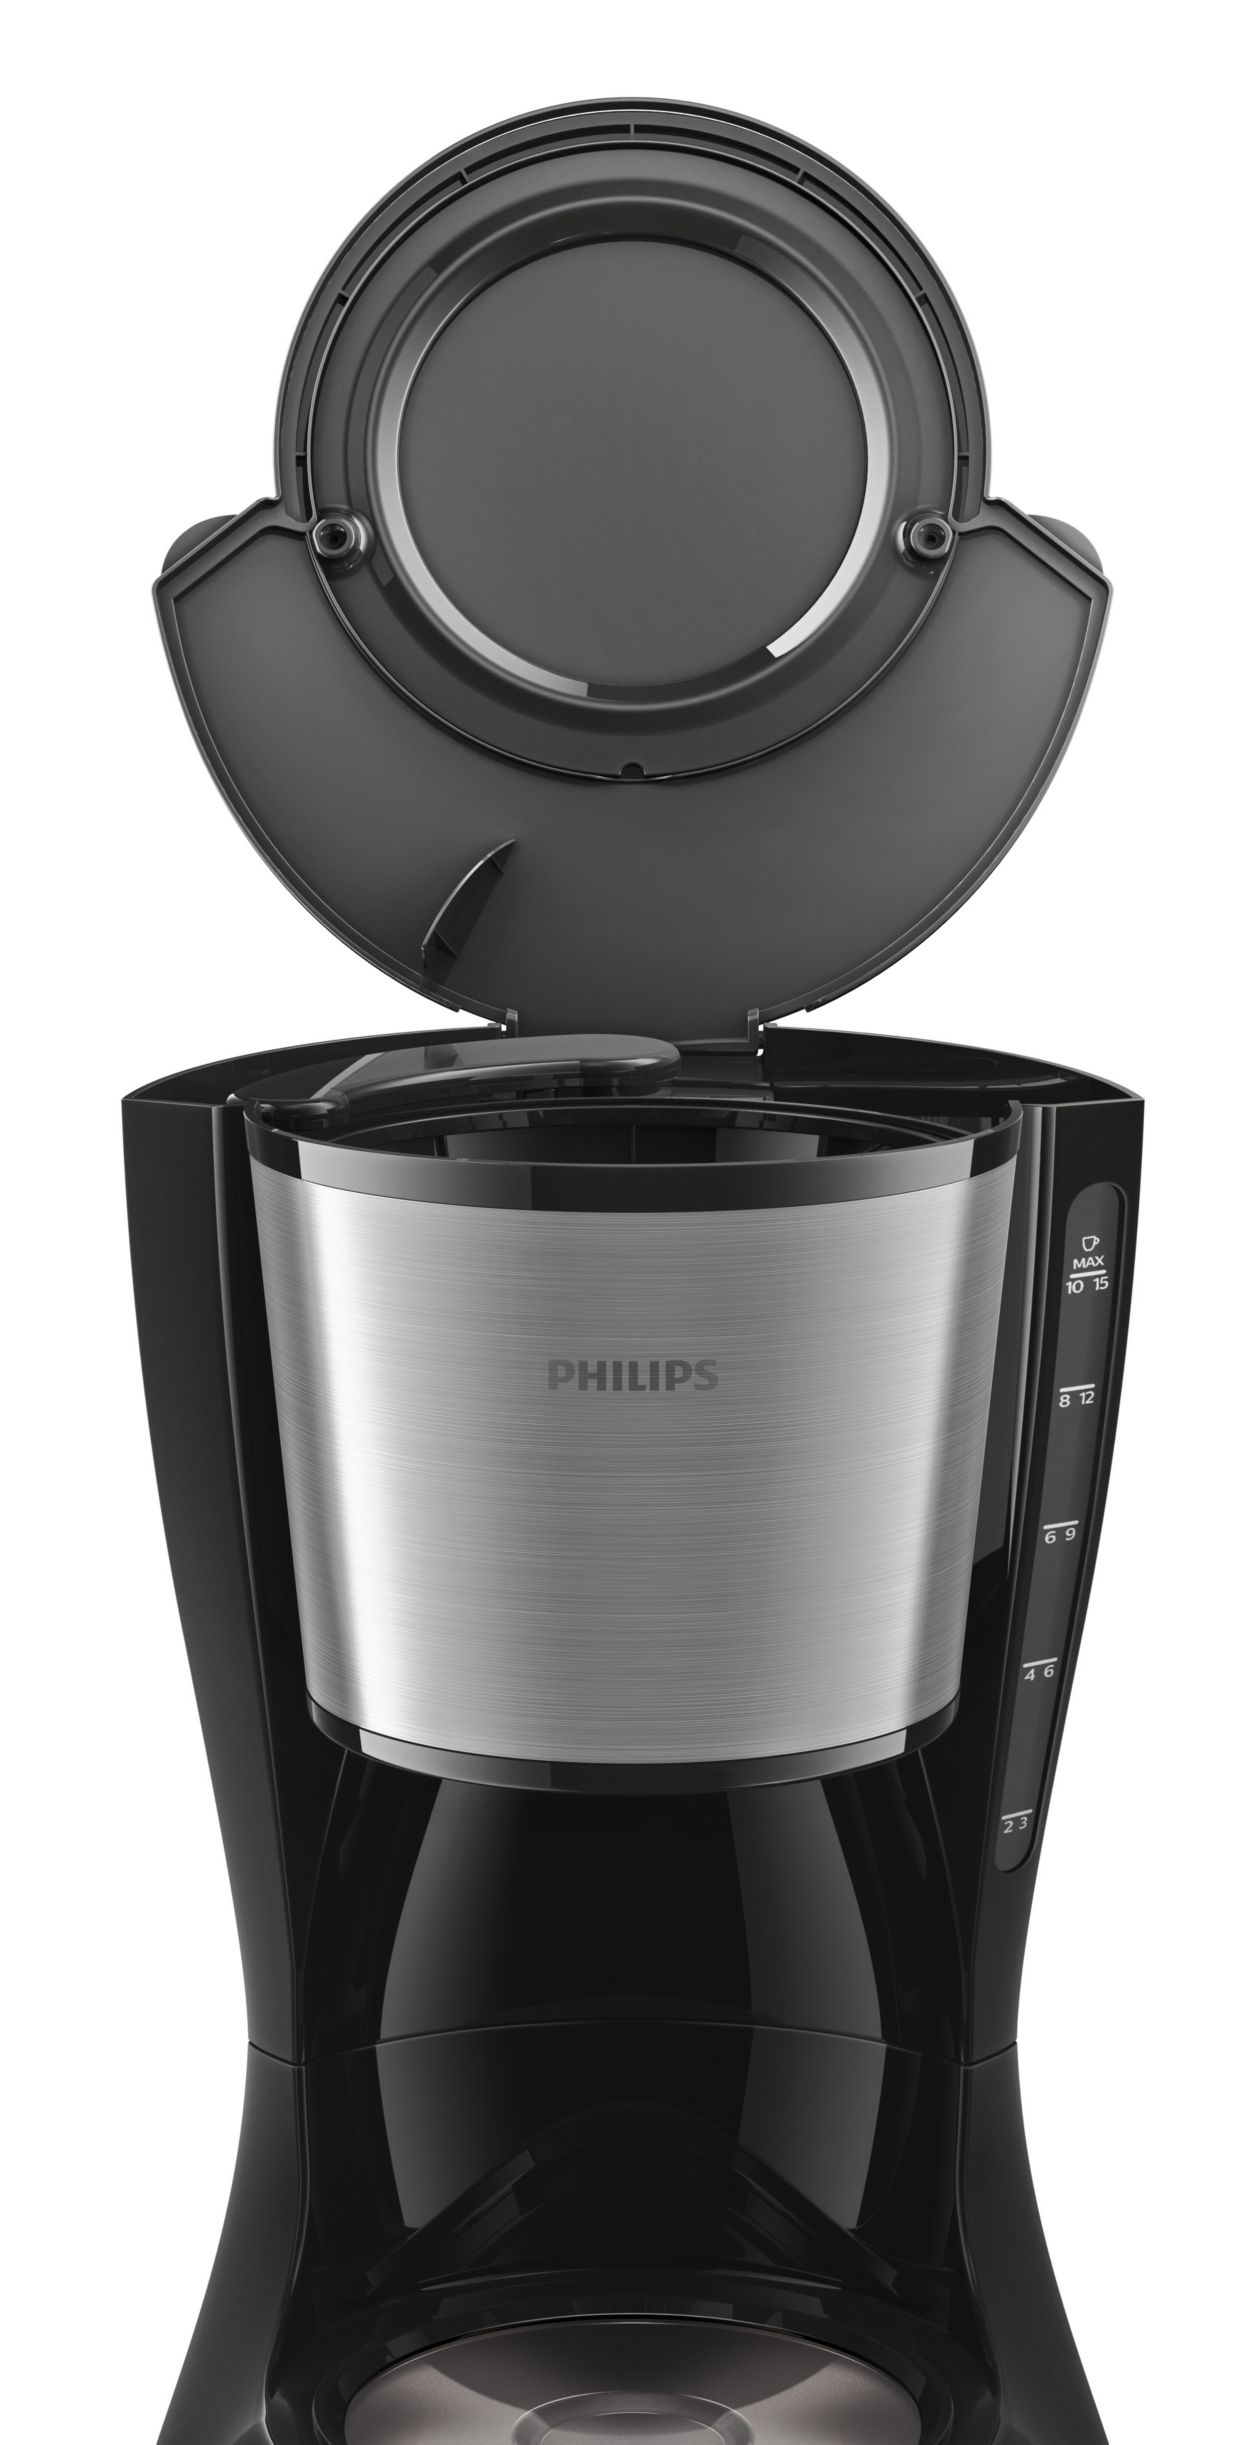 Cafetera de filtro Philips HD7462/20. Nueva de segunda mano por 32